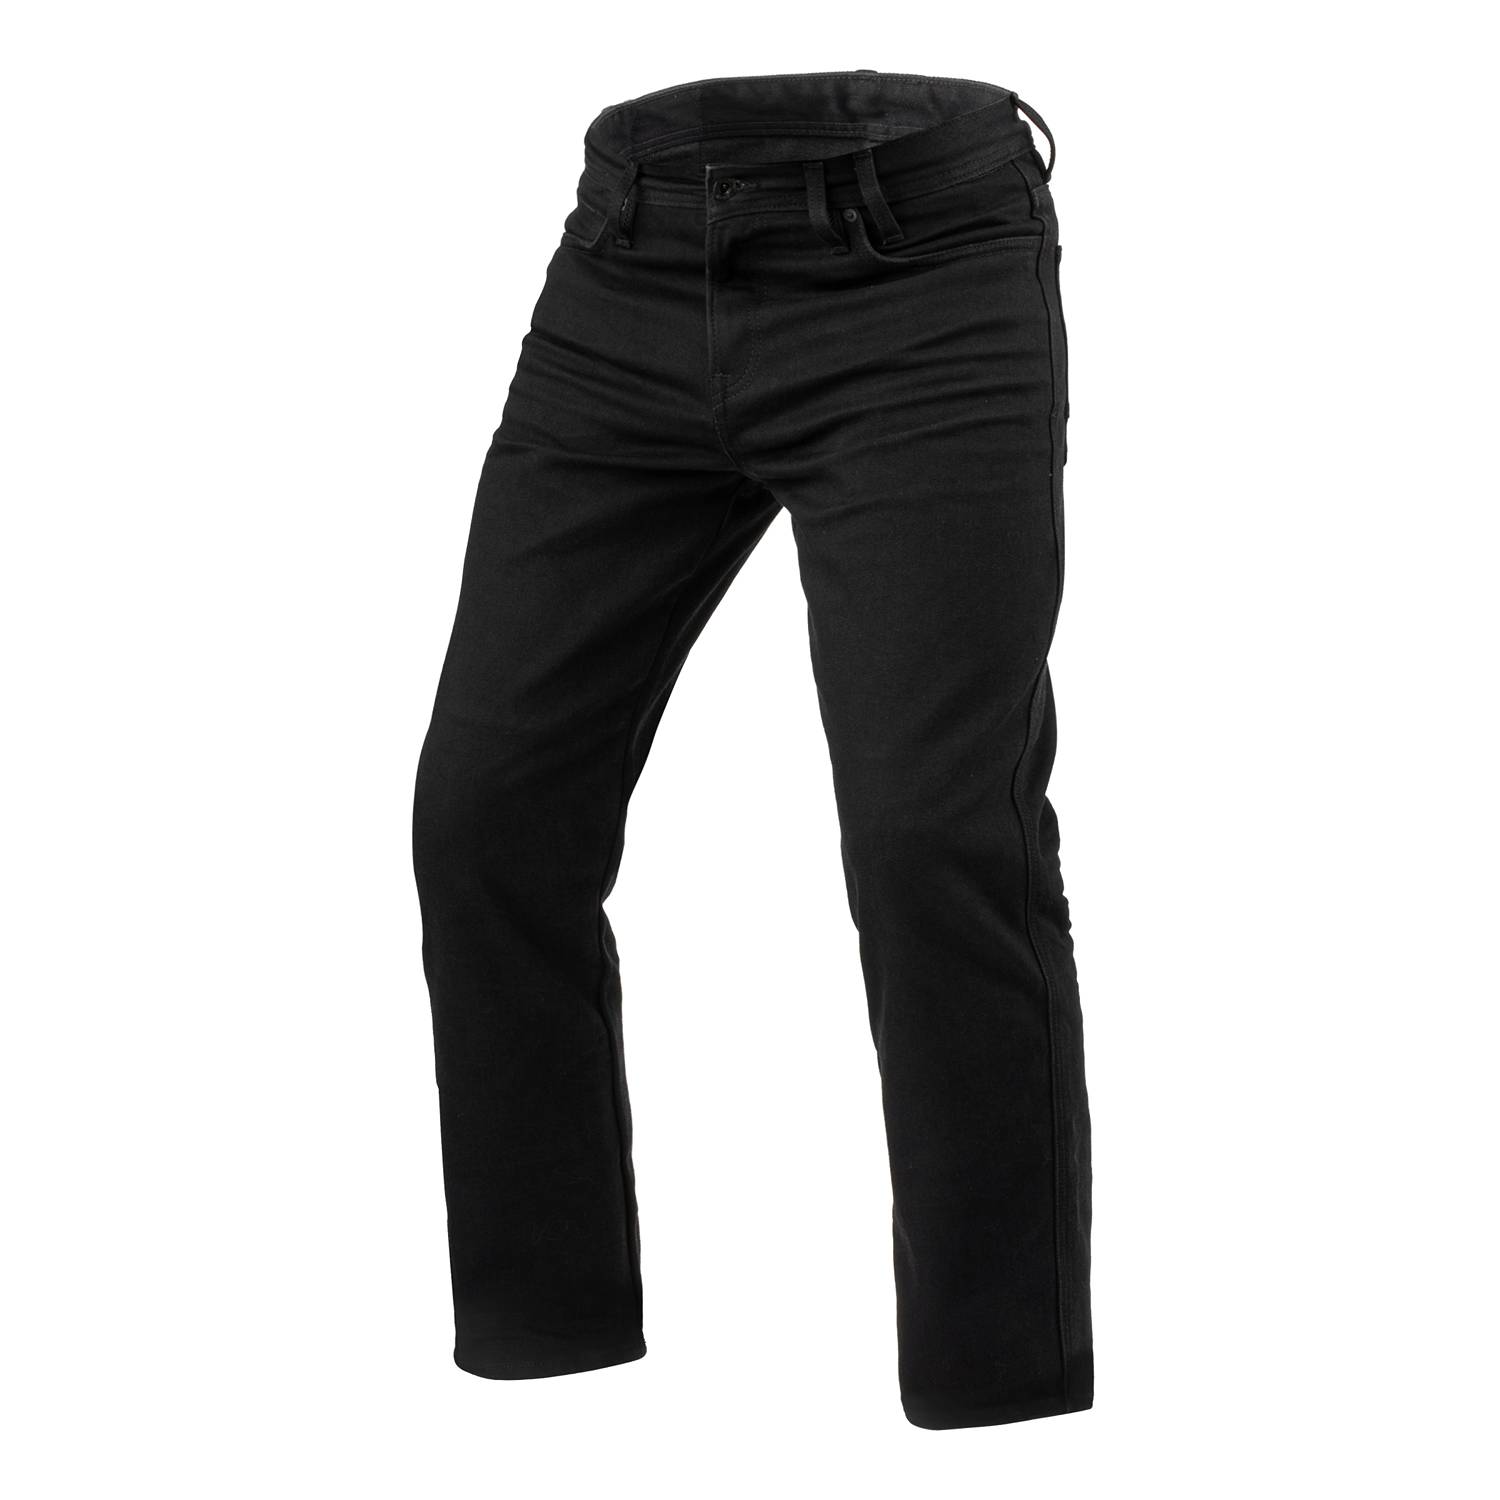 Image of REV'IT! Jeans Lombard 3 RF Black L32 Motorcycle Jeans Größe L32/W33